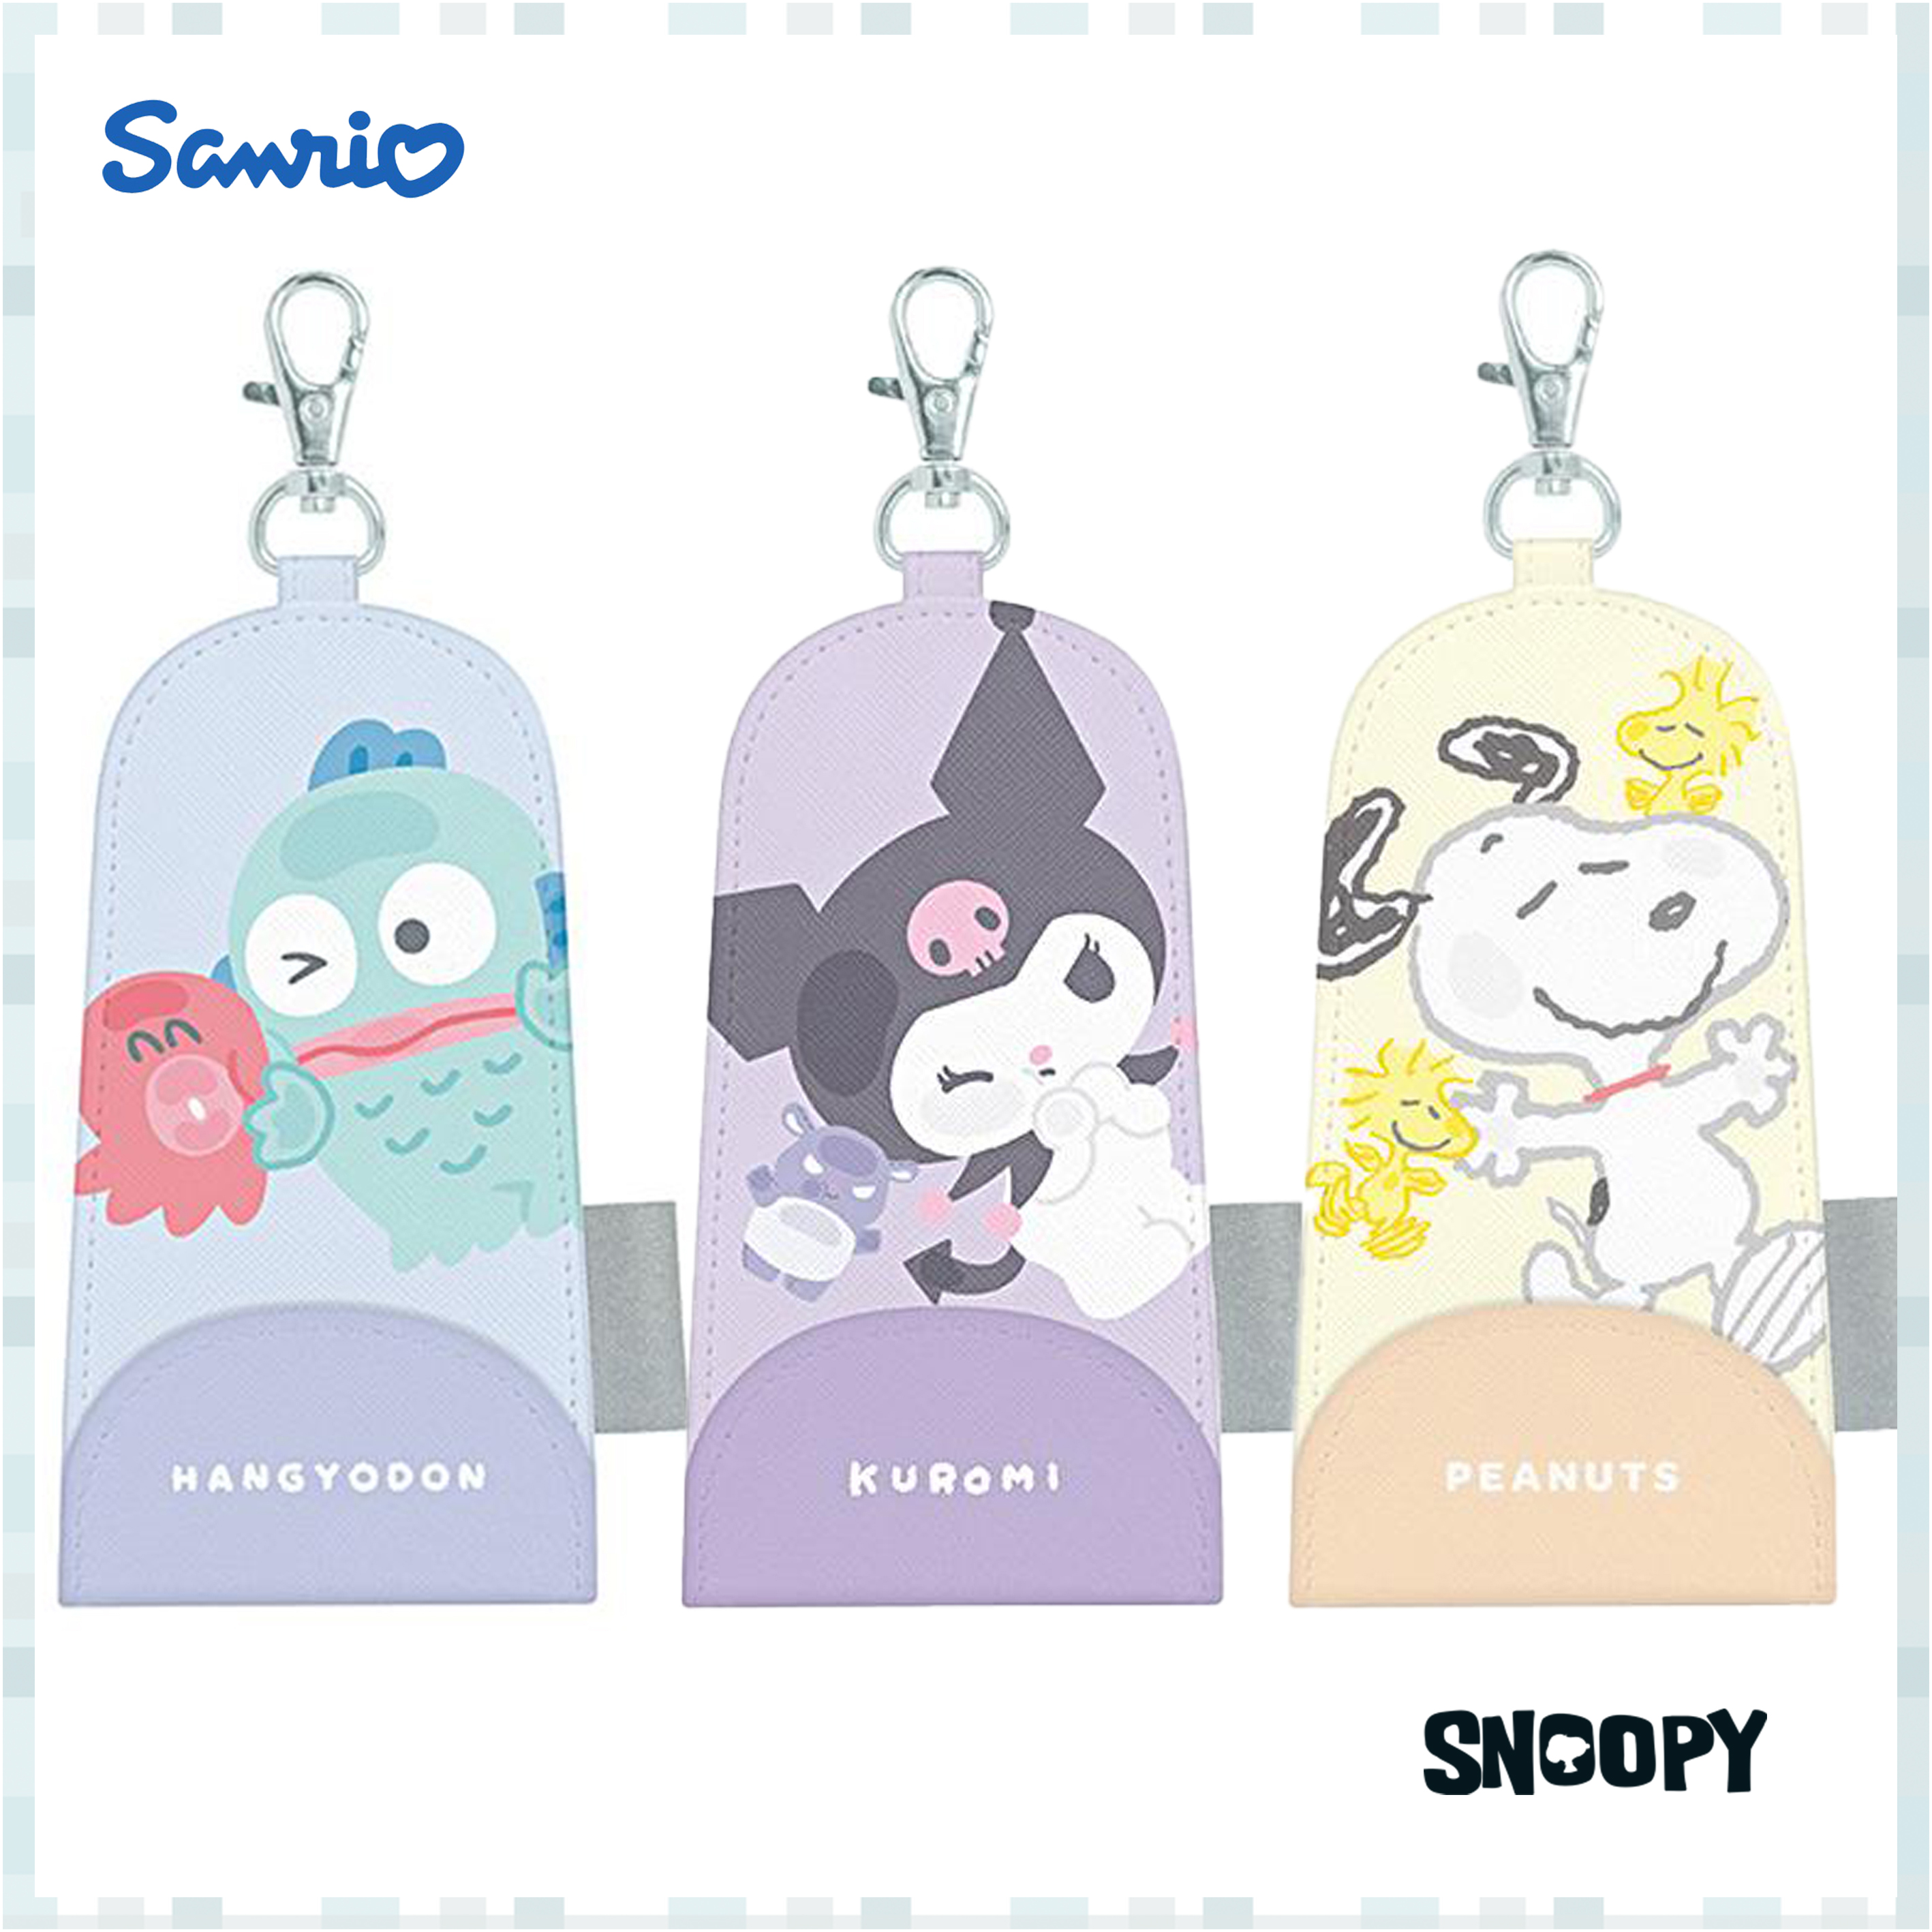 鑰匙包-SNOOPY PEANUTS 三麗鷗 Sanrio 日本正版授權